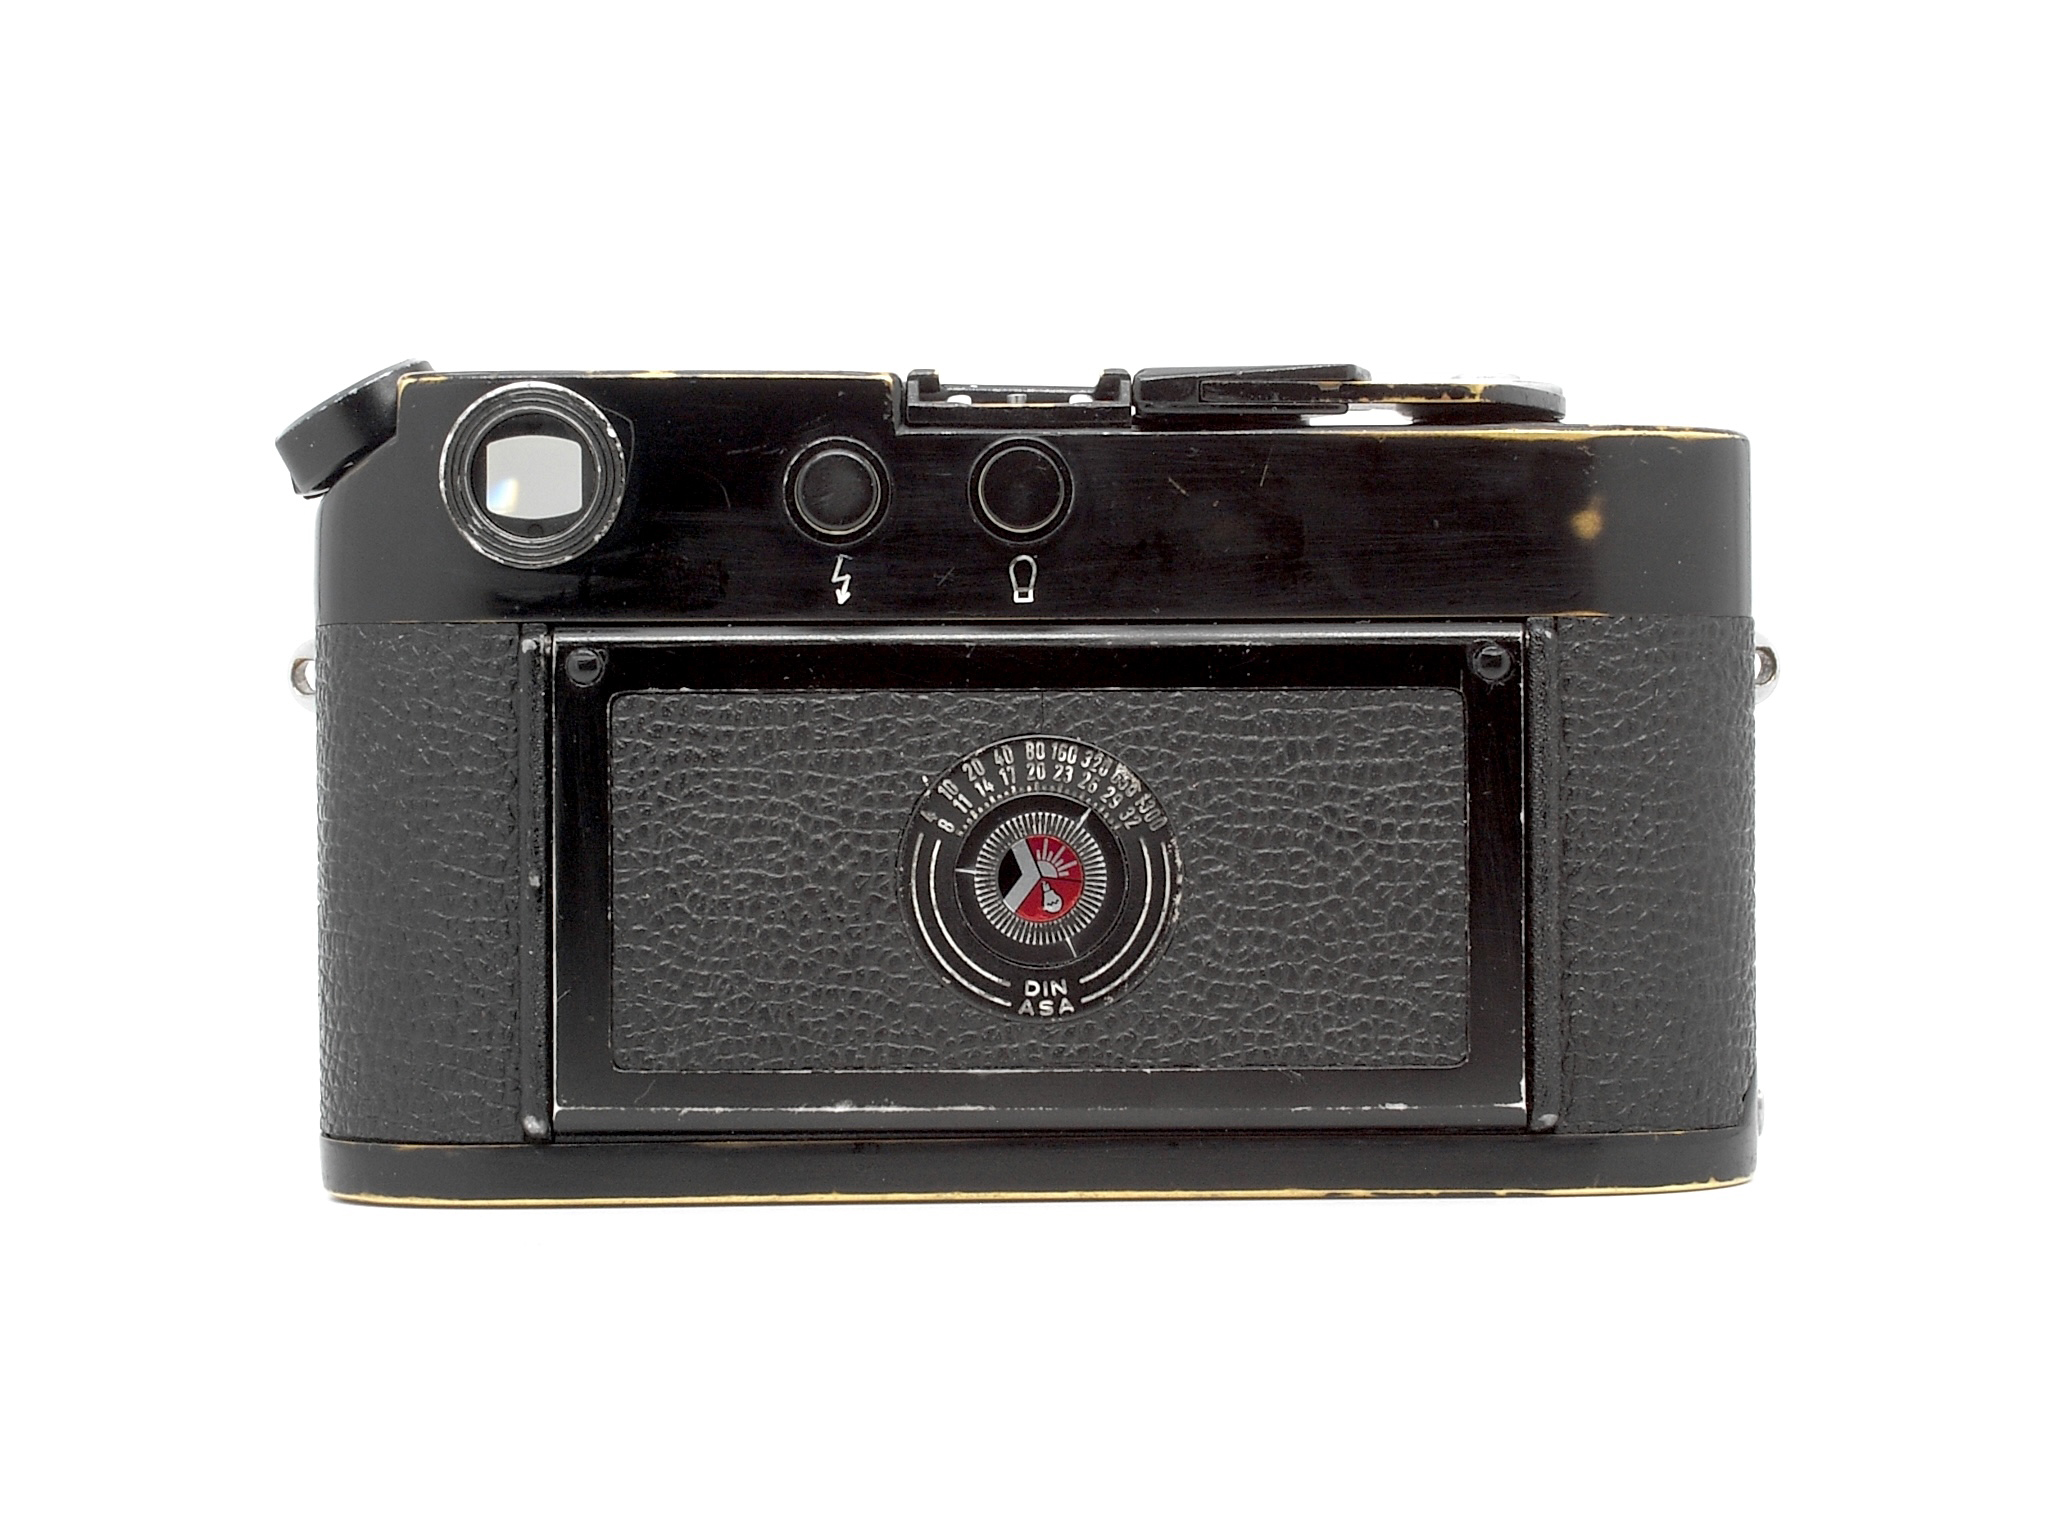 Leica M4 schwarz lackiert